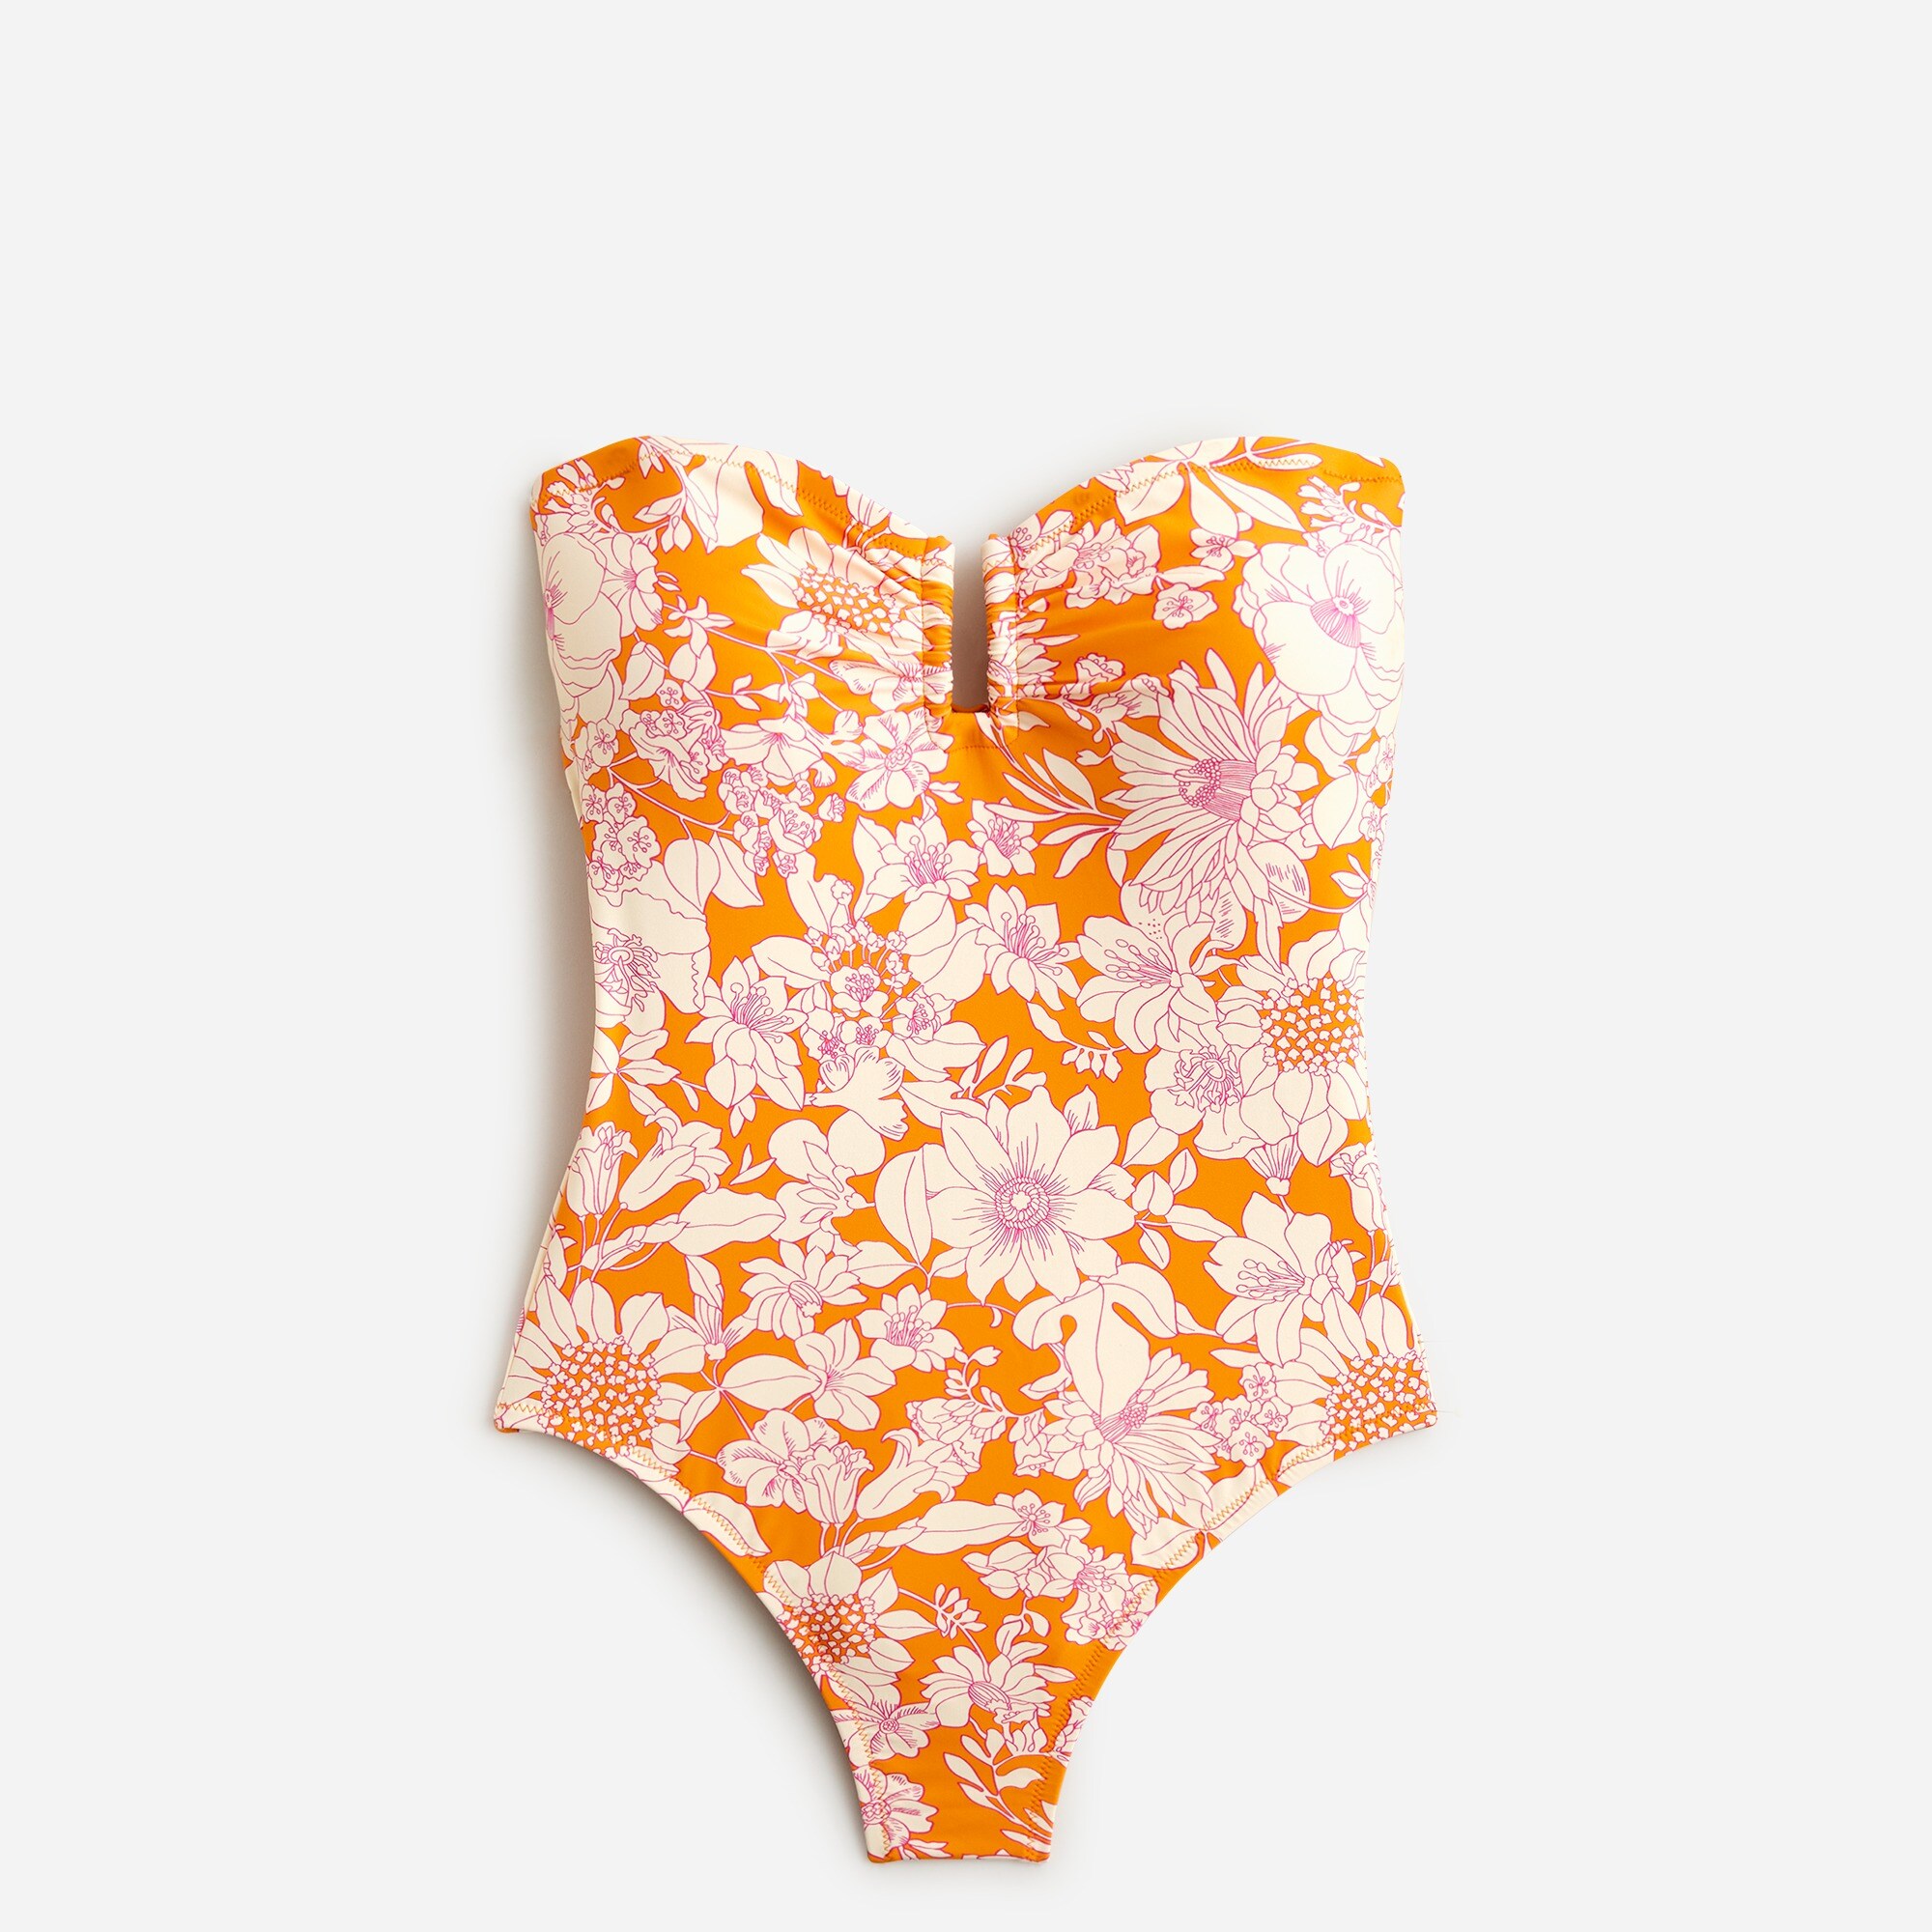  Strapless underwire one-piece swimsuit in orange floral